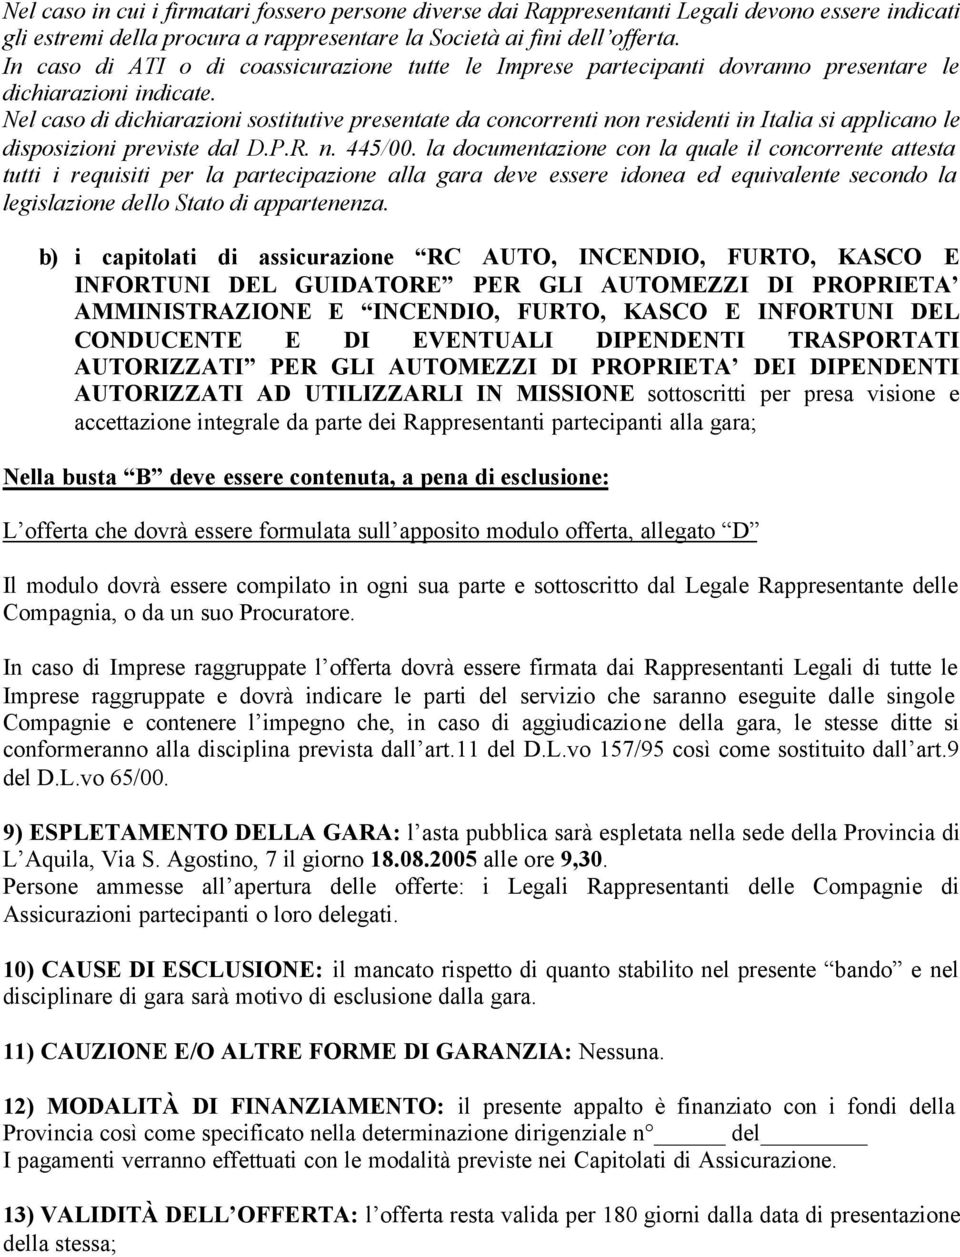 Nel caso di dichiarazioni sostitutive presentate da concorrenti non residenti in Italia si applicano le disposizioni previste dal D.P.R. n. 445/00.